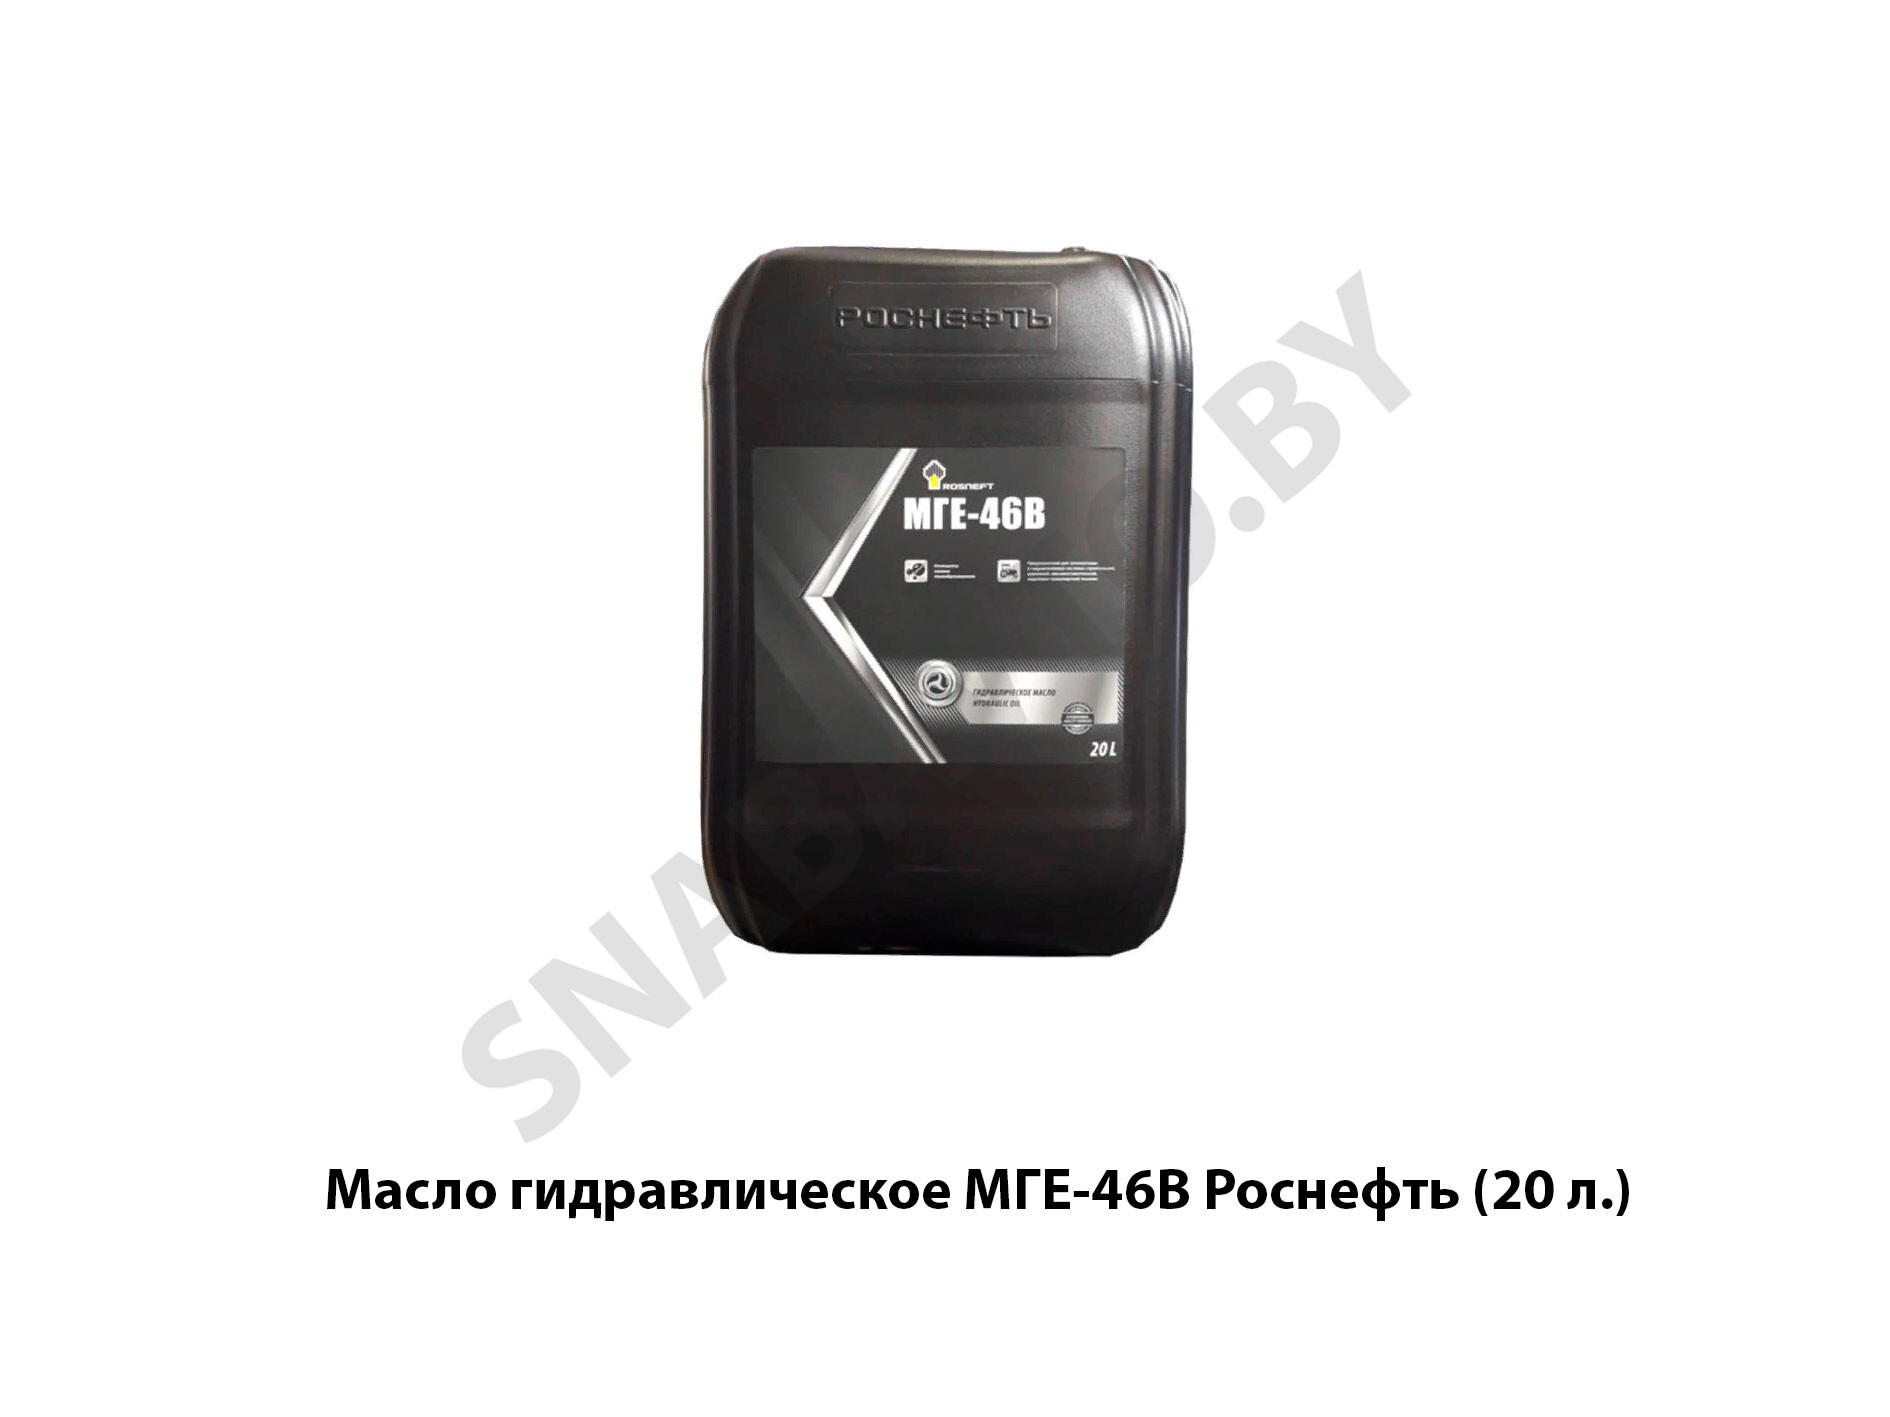 Масло гидравлическое  Роснефть (20 л.) МГЕ-46В, РФ